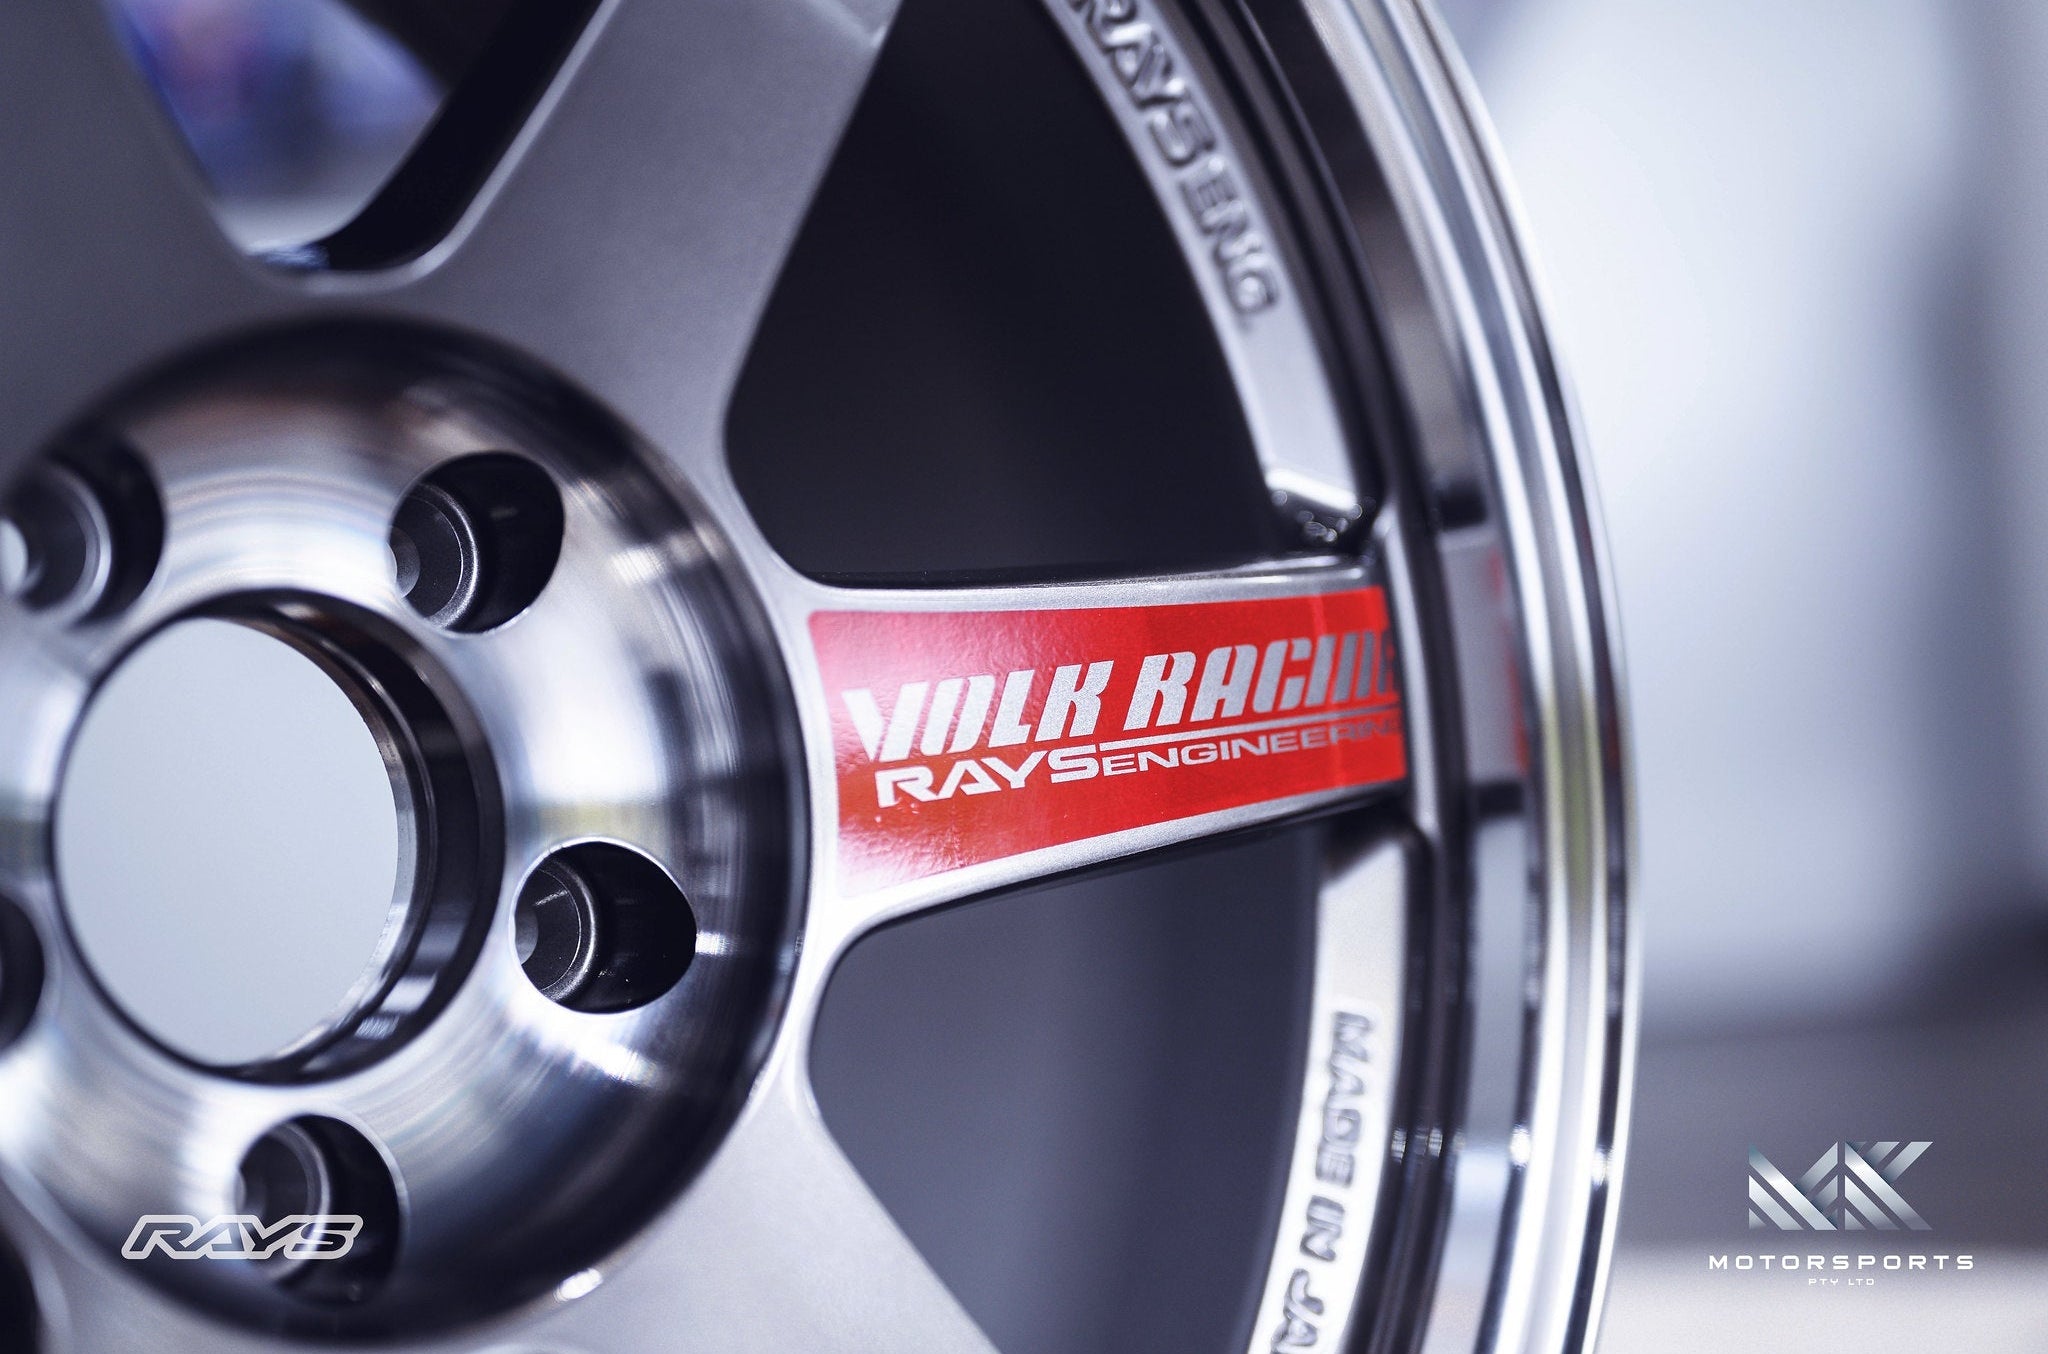 Volk Racing TE37SL GR Yaris Custom Batch - Premium Wheels from Volk Racing - From just $4090.0! Shop now at MK MOTORSPORTS